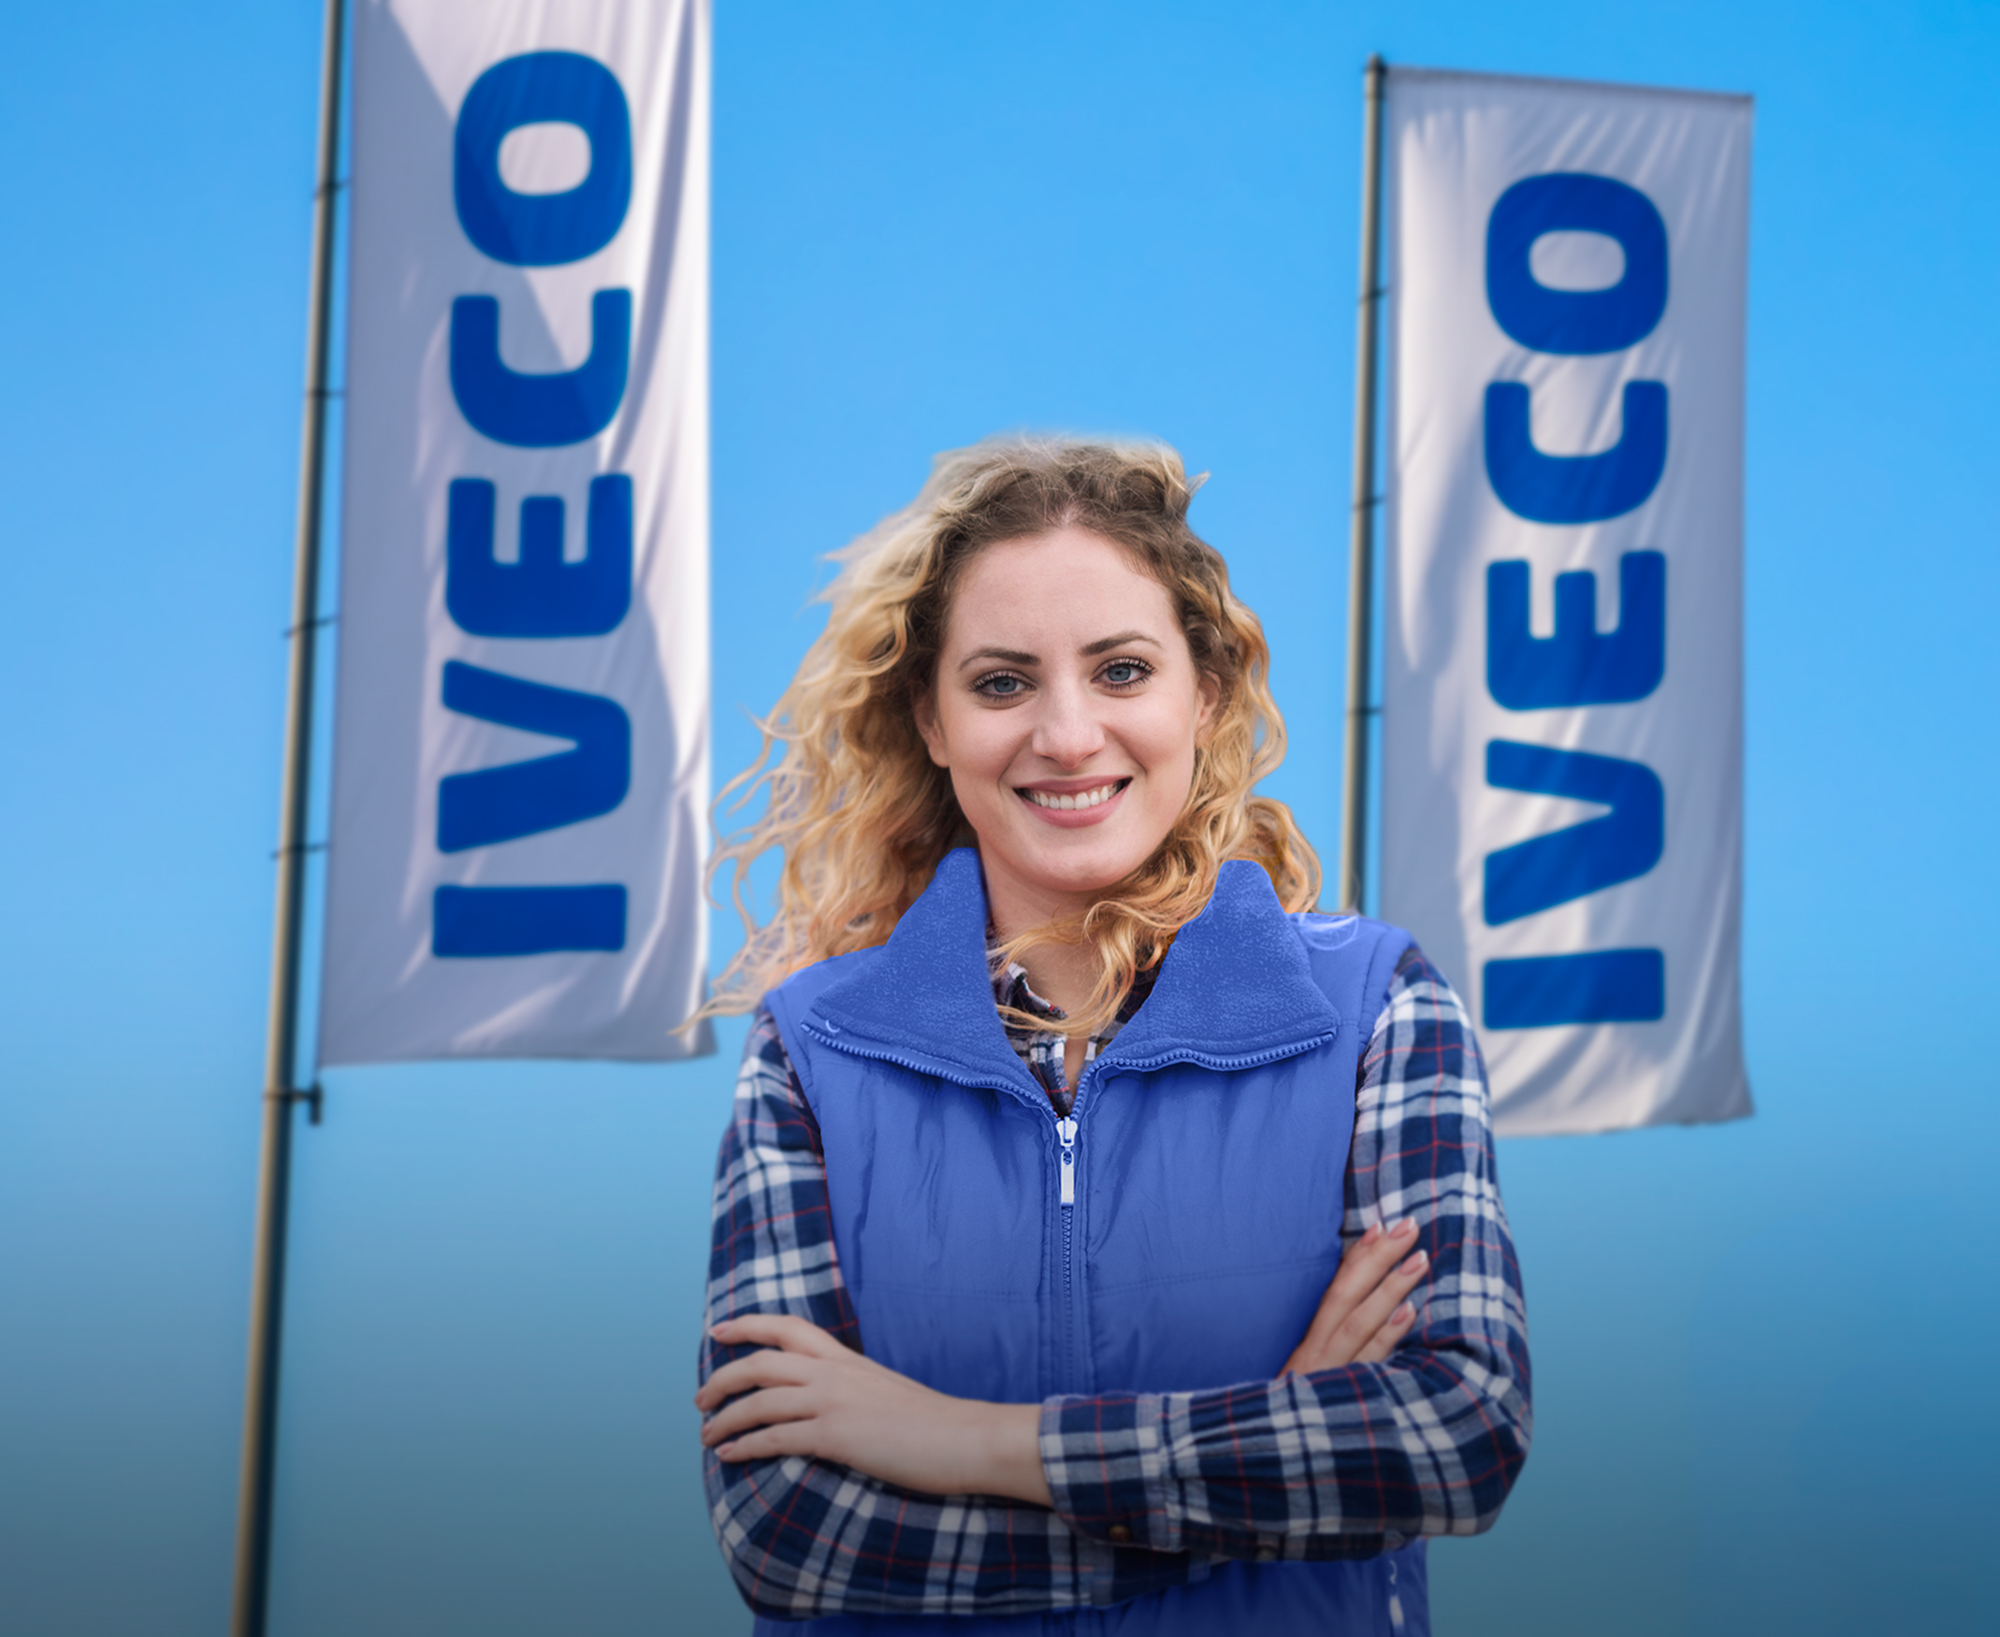 Karriere bei IVECO: IVECO steht für Zuverlässigkeit, Kollegialität und Sicherheit als langjähriger, erfahrener Arbeitgeber.